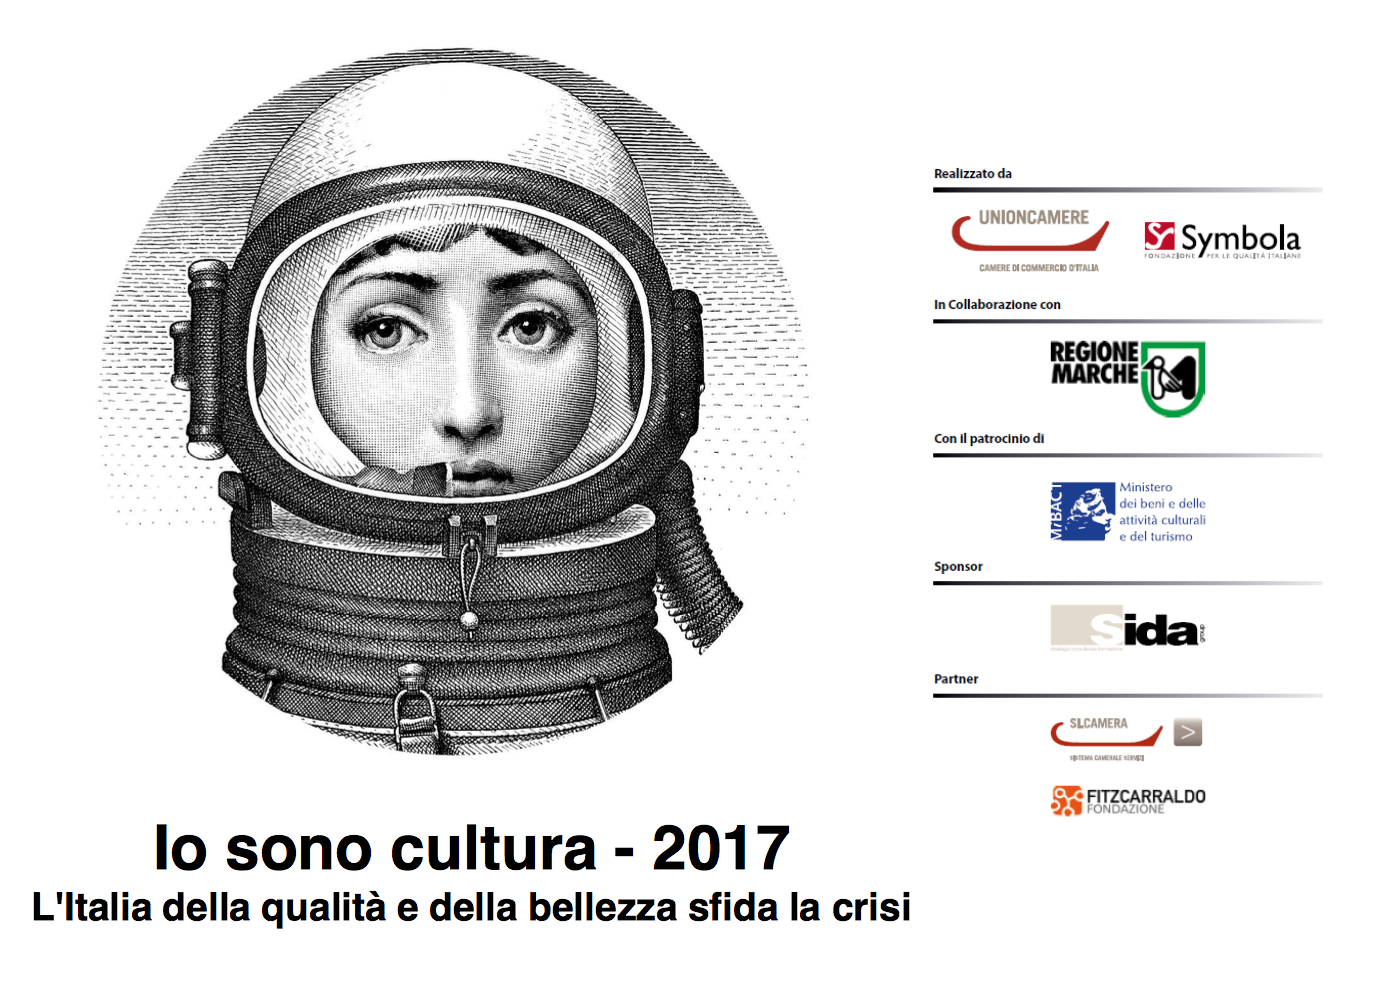 Io sono cultura: presentato il Rapporto 2017 di Fondazione Symbola e Unioncamere, per fotografare l’Italia delle imprese culturali e creative